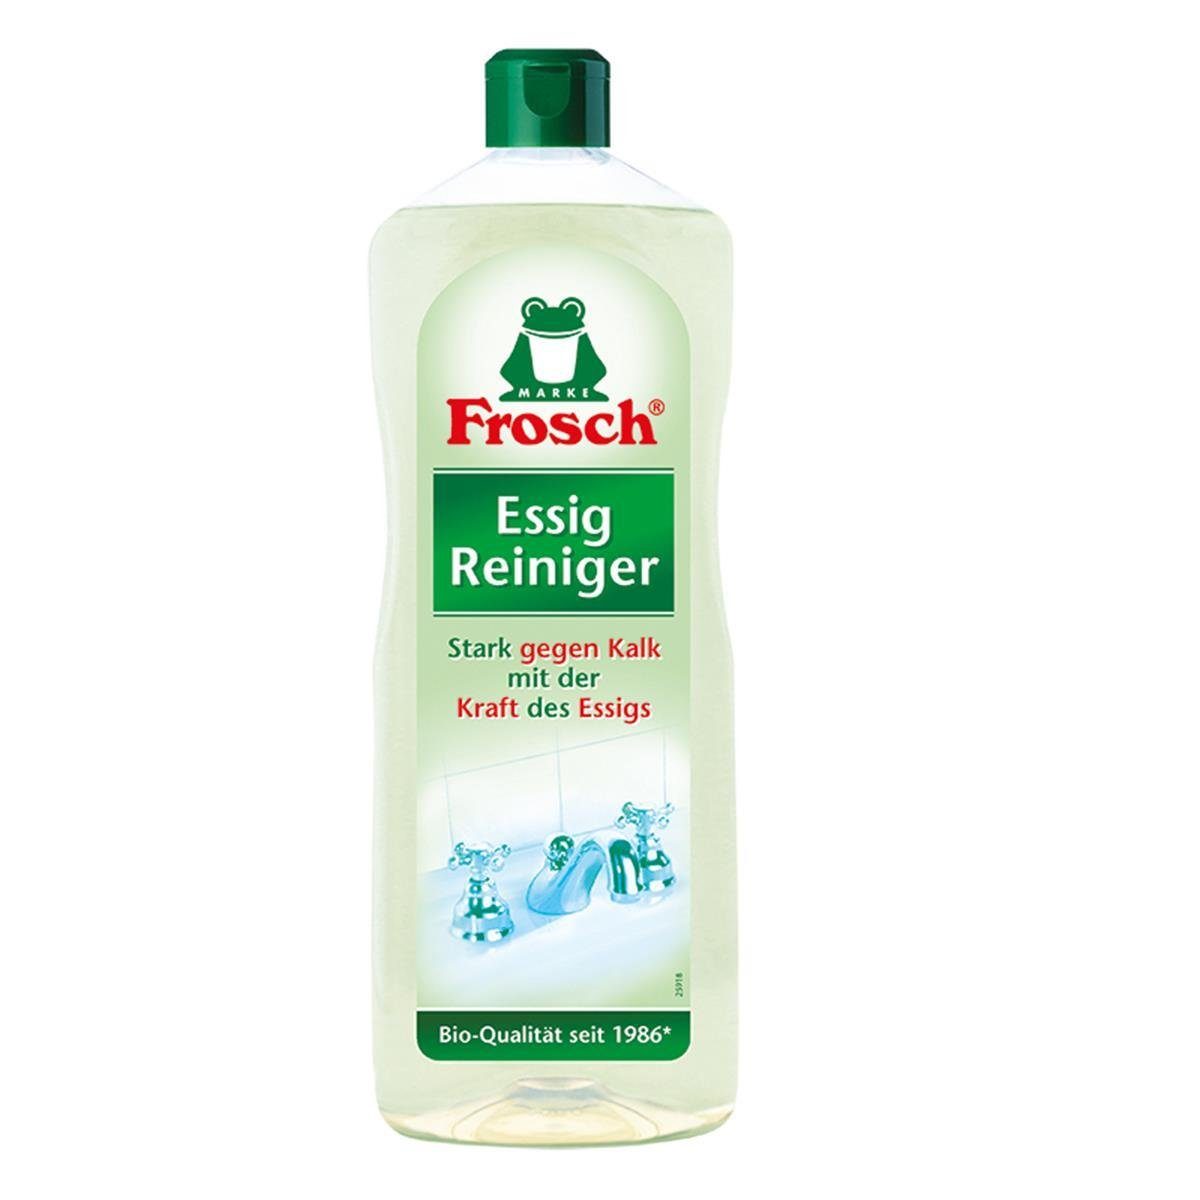 FROSCH Frosch Essig Reiniger 1 Liter - Stark gegen Kalk Універсальний засіб для чищення